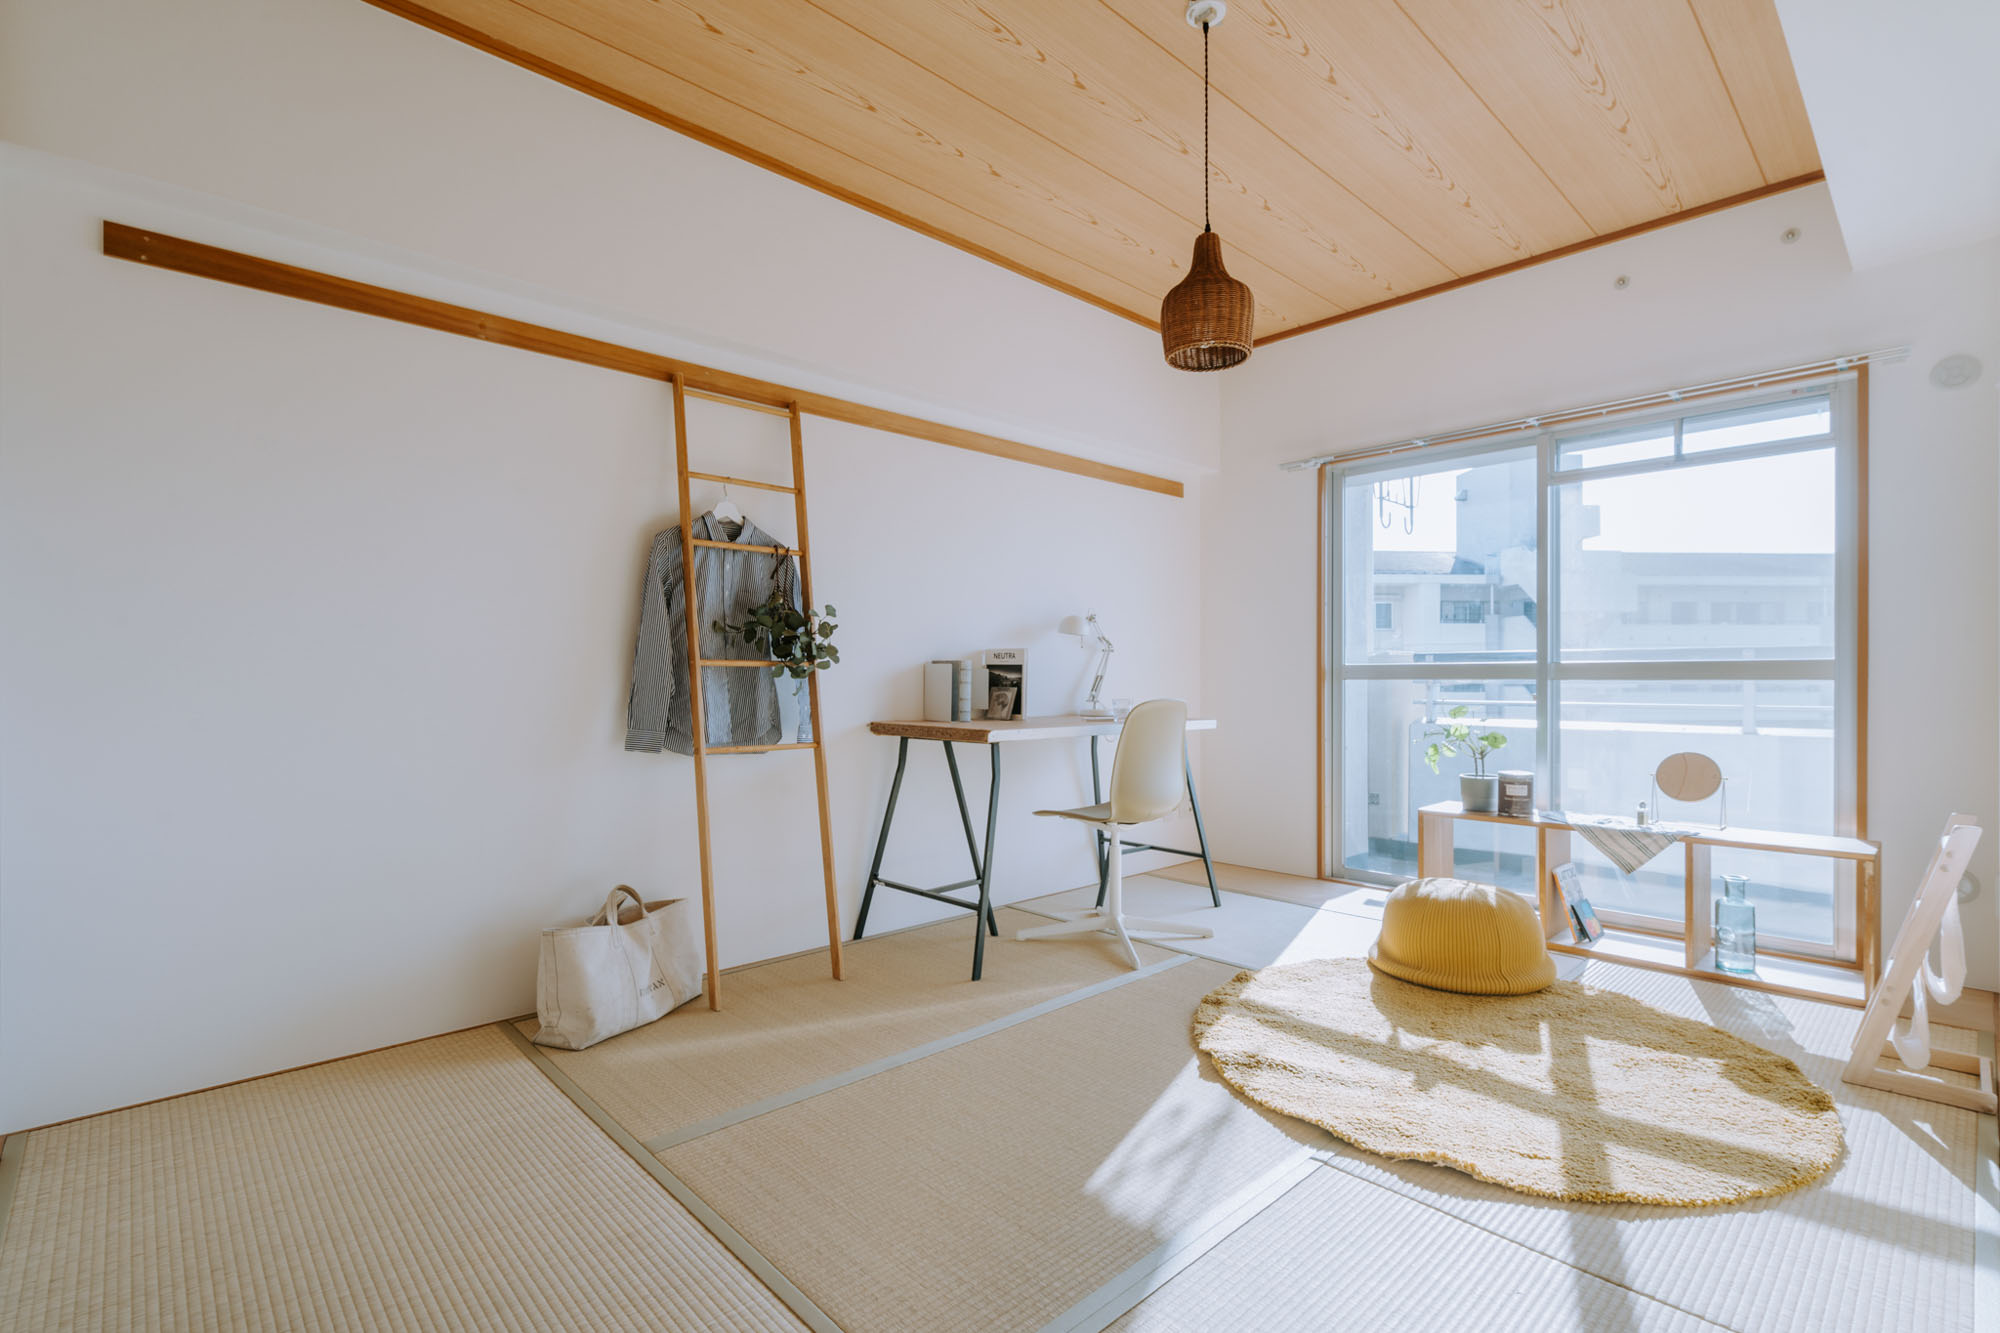 和室といってもナチュラルカラーで統一されているので、ベッドやデスク、チェアなど、洋風の家具を合わせるのもよさそうですよ。